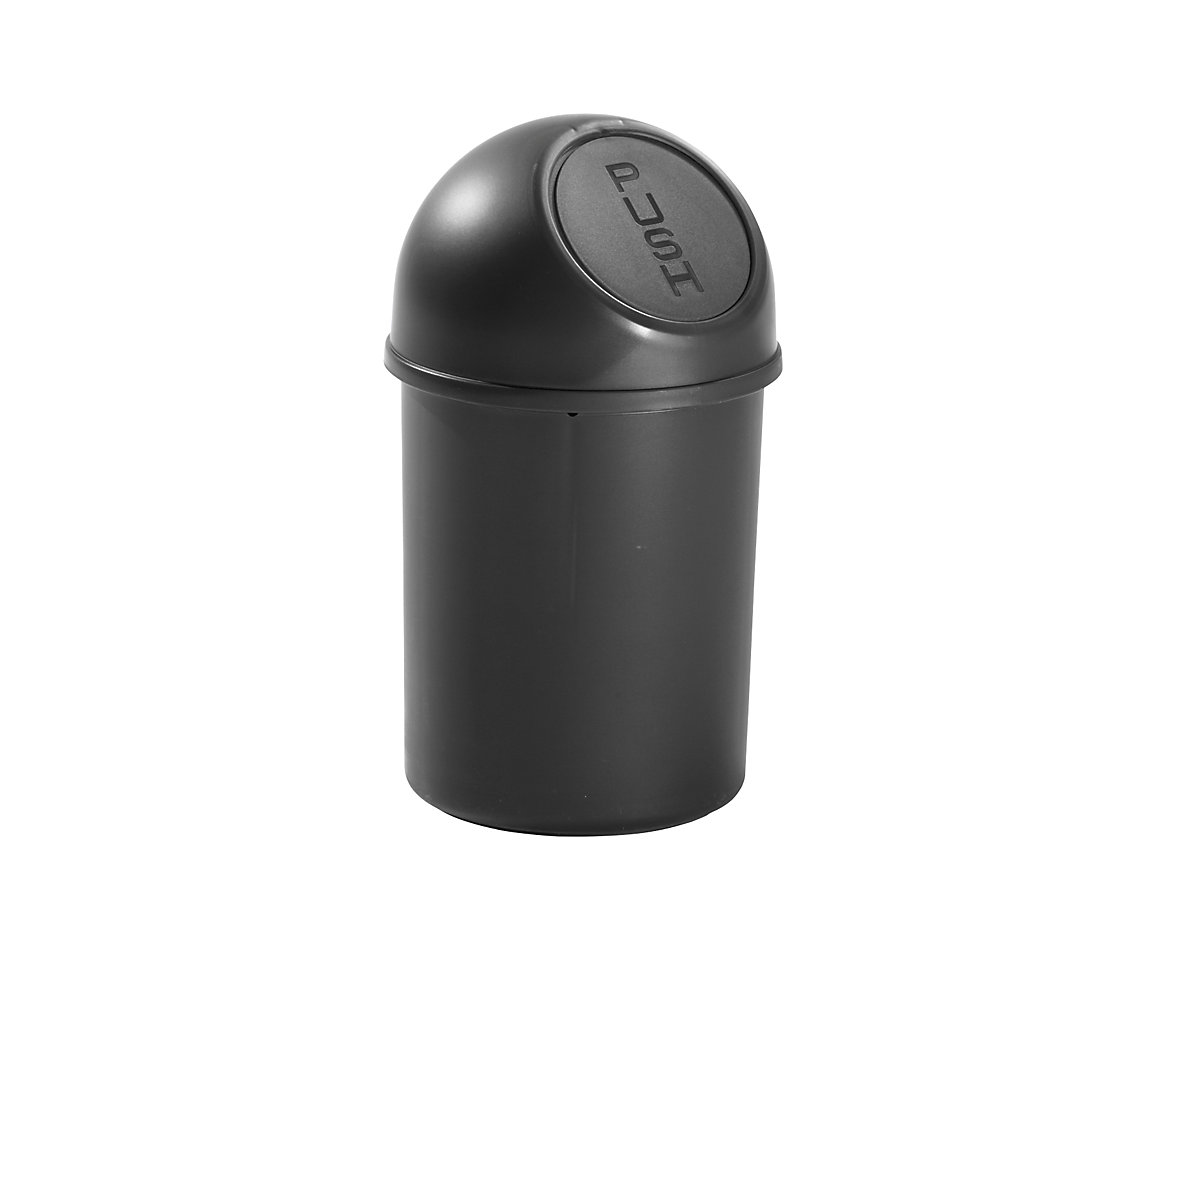 Push-Abfallbehälter aus Kunststoff helit, Volumen 6 l, VE 6, HxØ 375 x 216 mm, schwarz-4